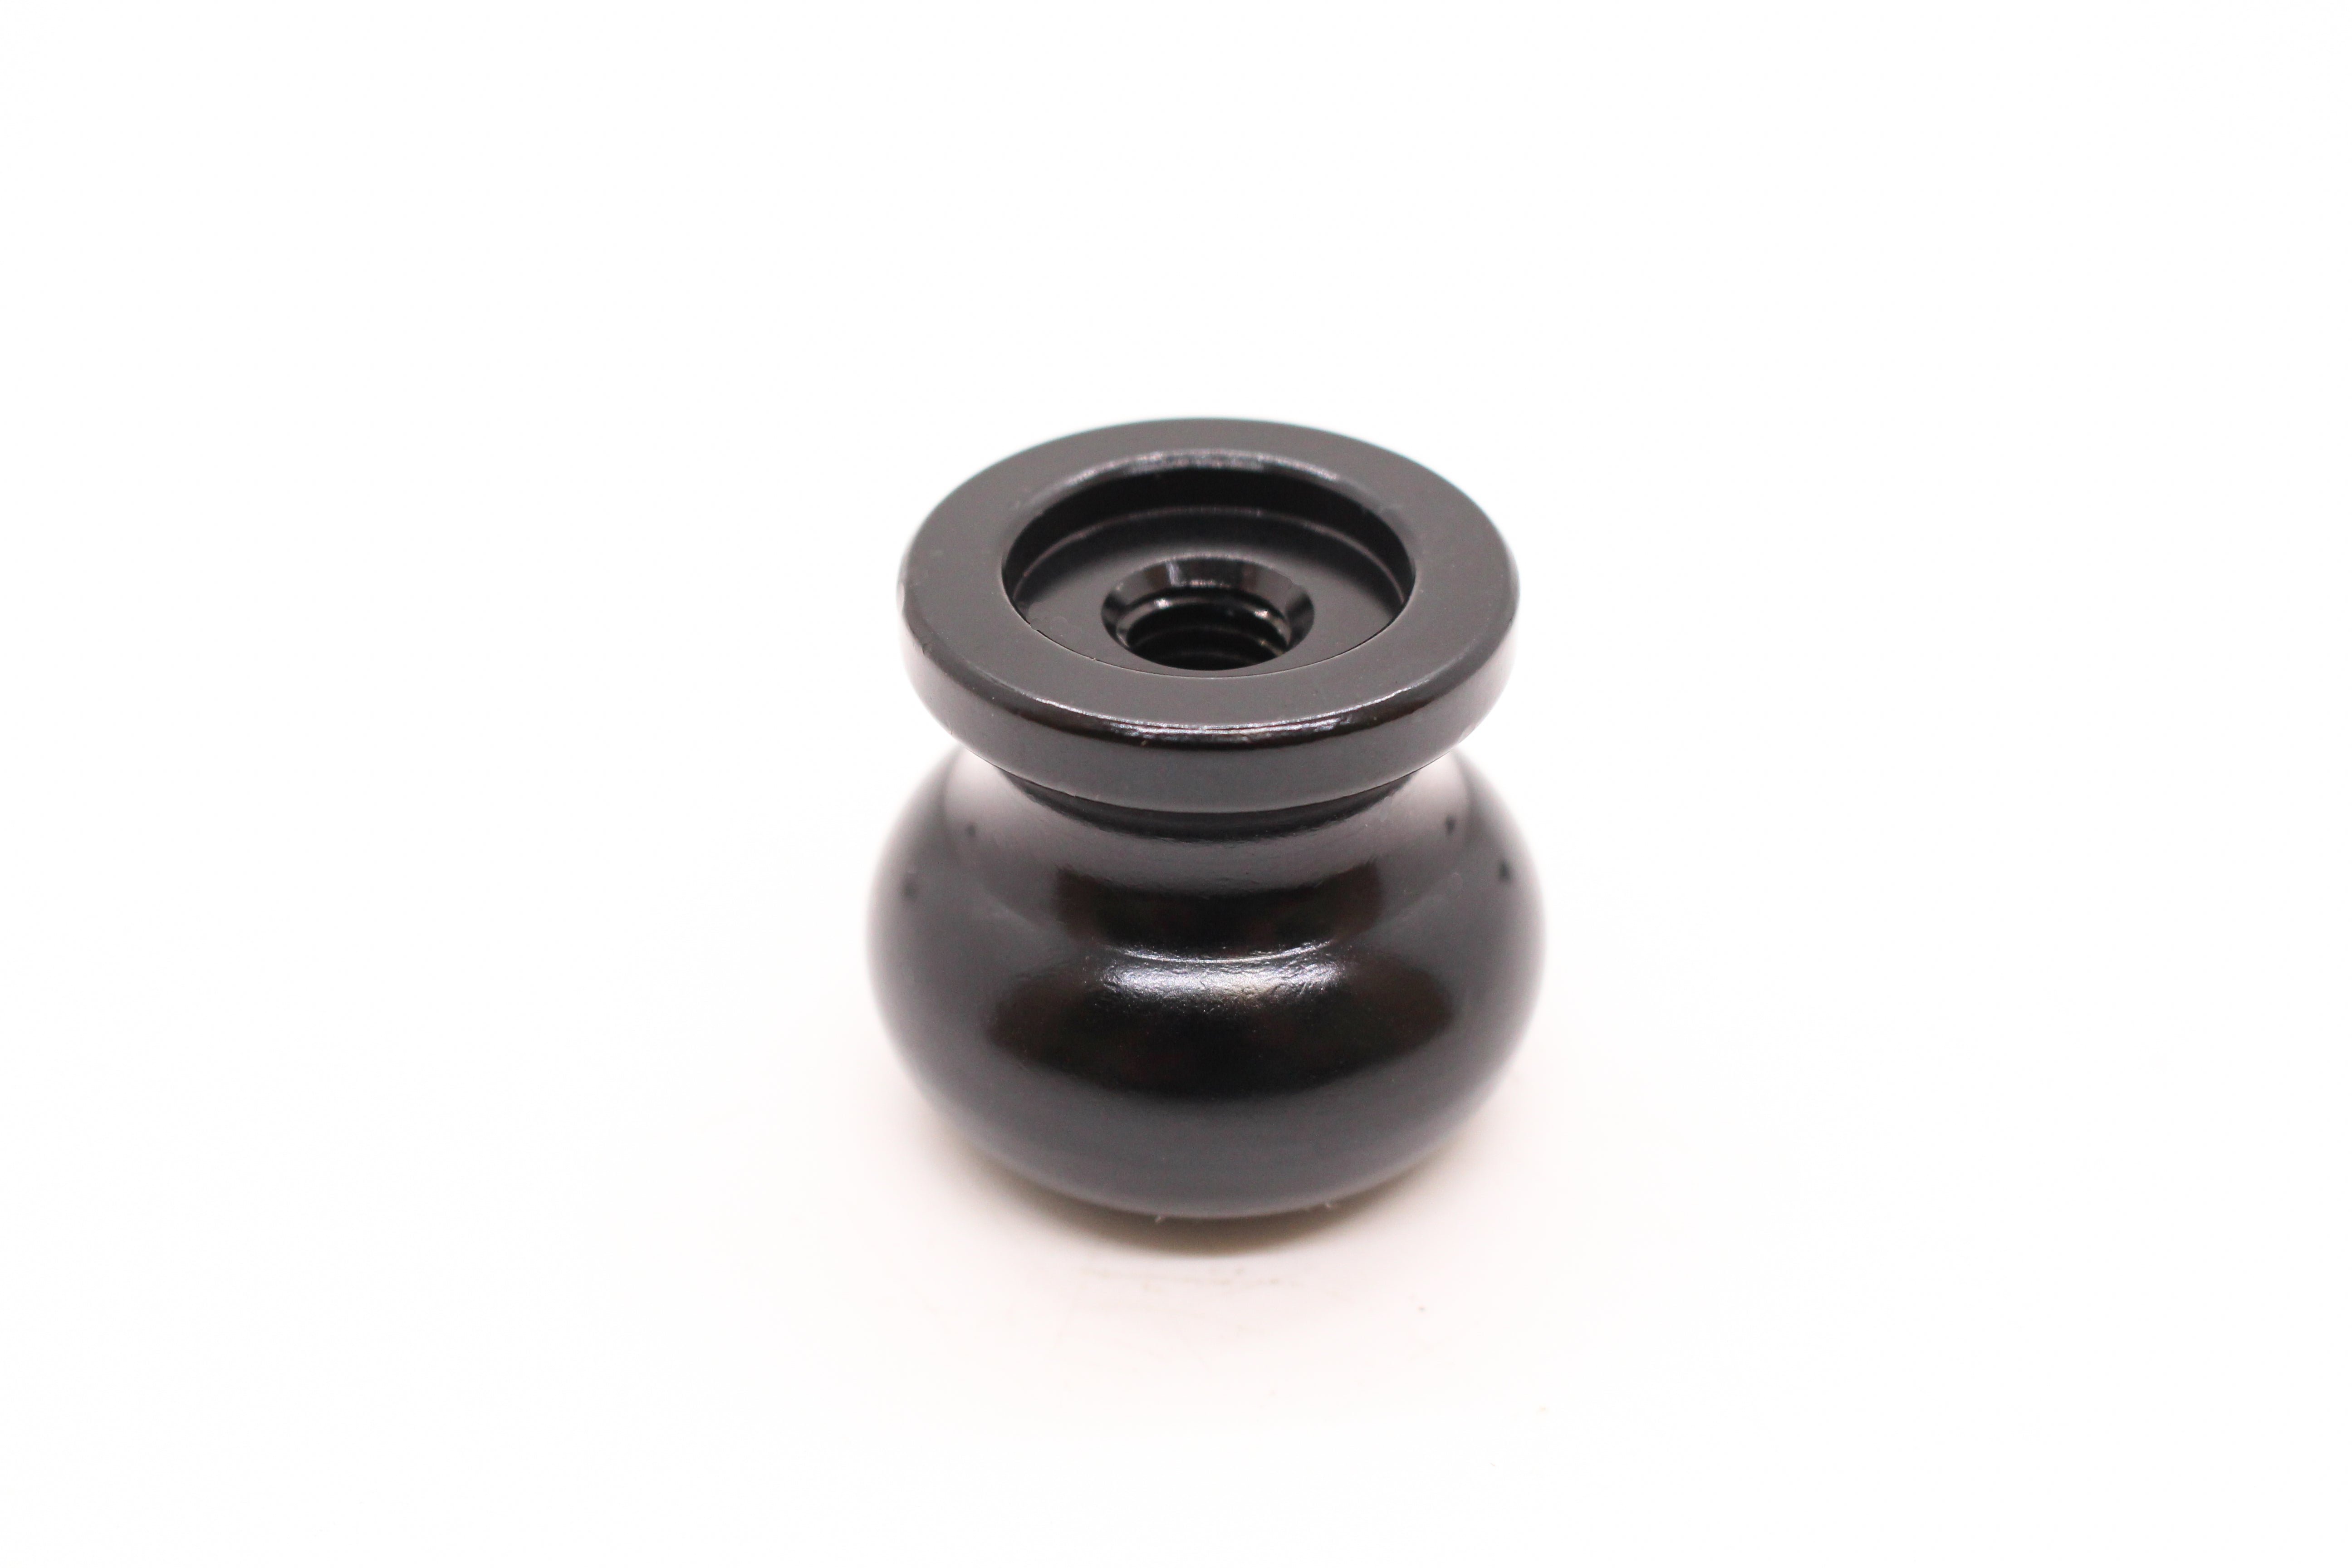 Aluminum Knob - 3/8” Thread. Round. Black